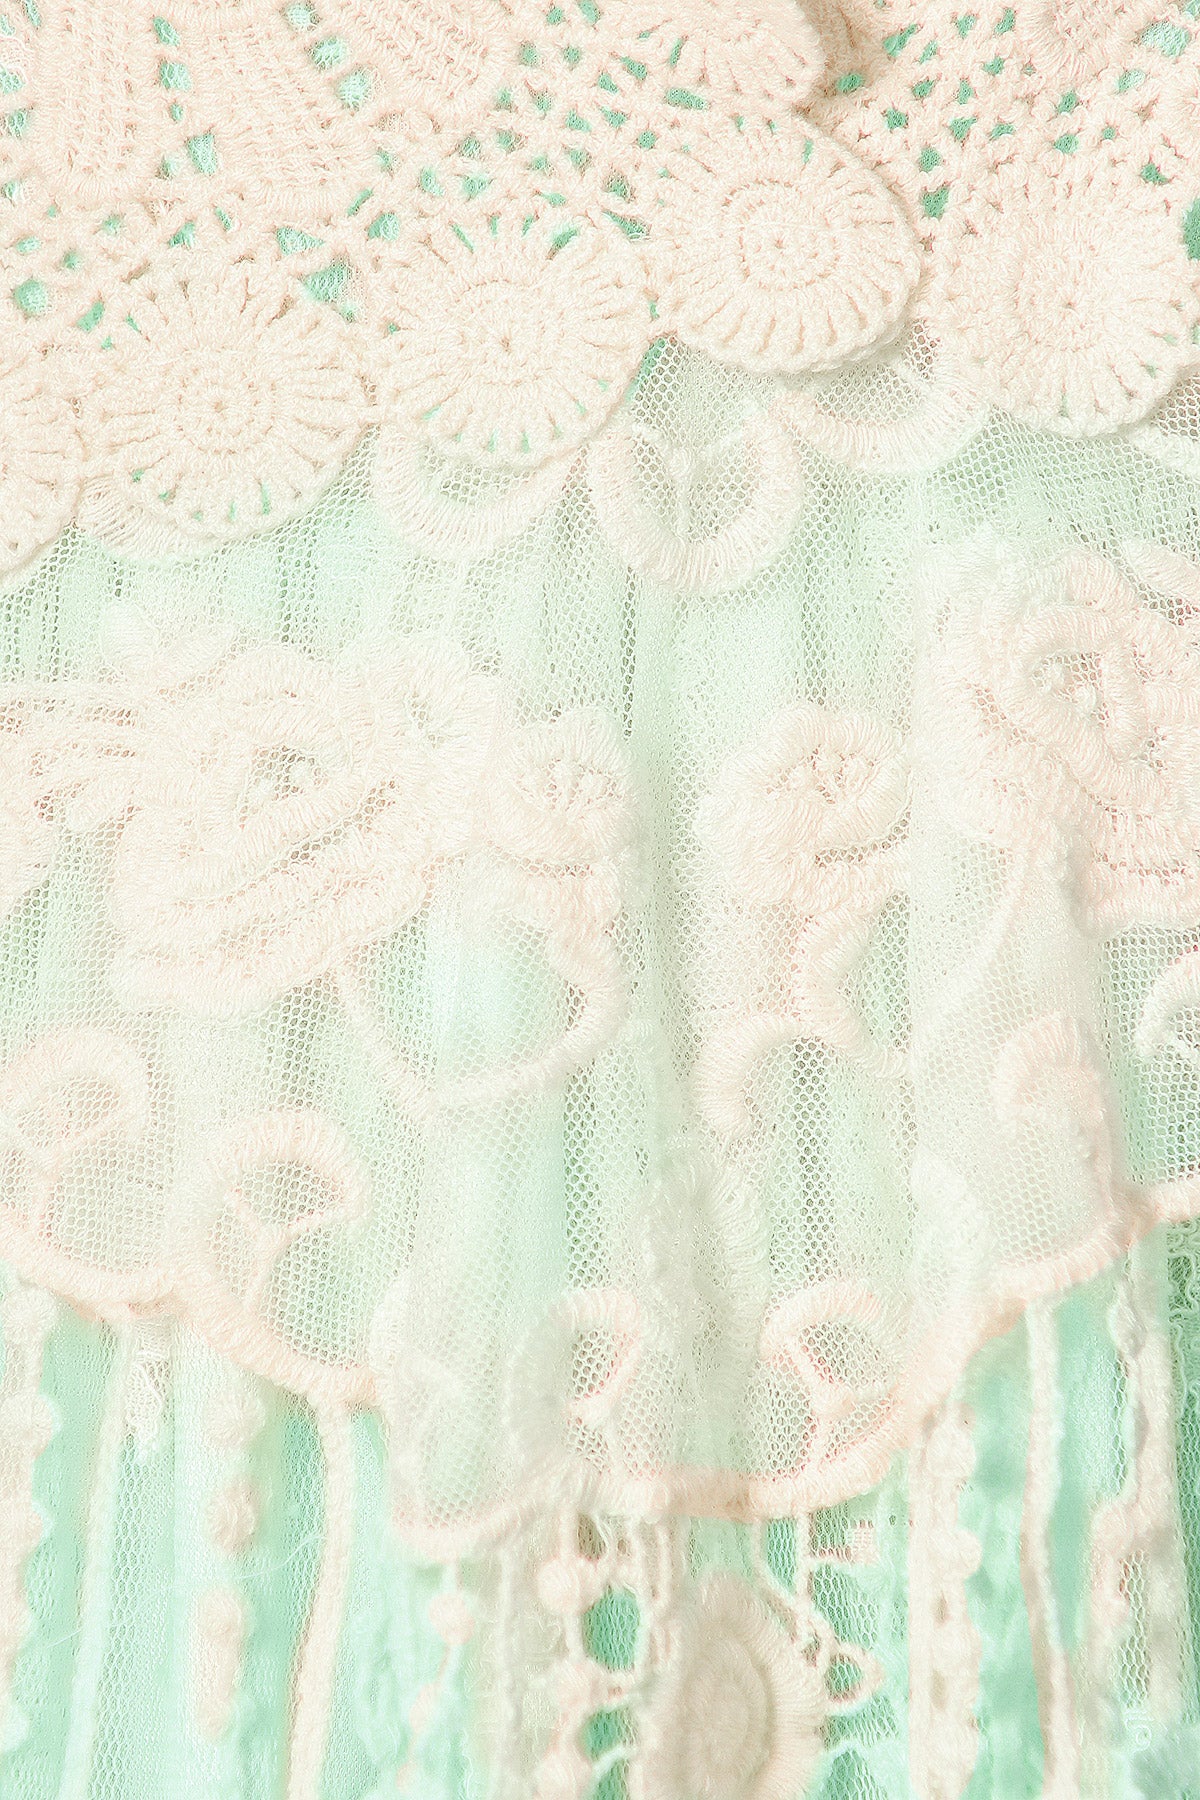 Gatsby Crochet Vest Lace Dress Set